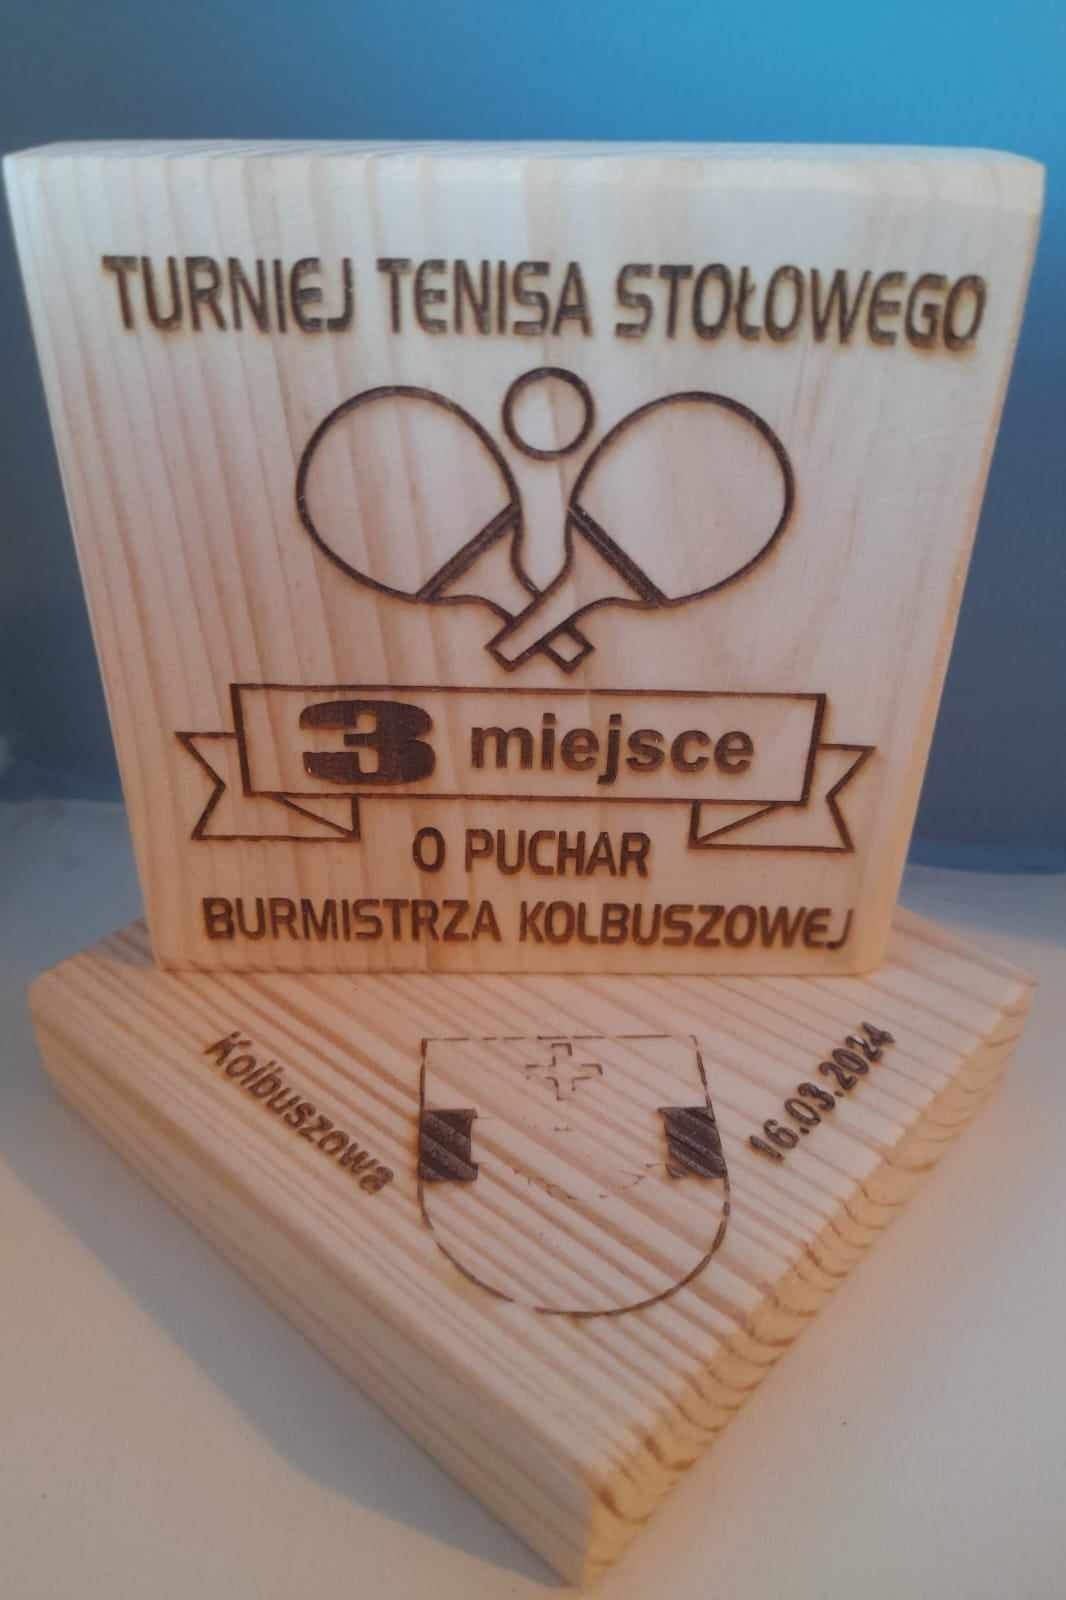 Turniej tenisa stołowego o Puchar Burmistrza Kolbuszowej - Obrazek 1